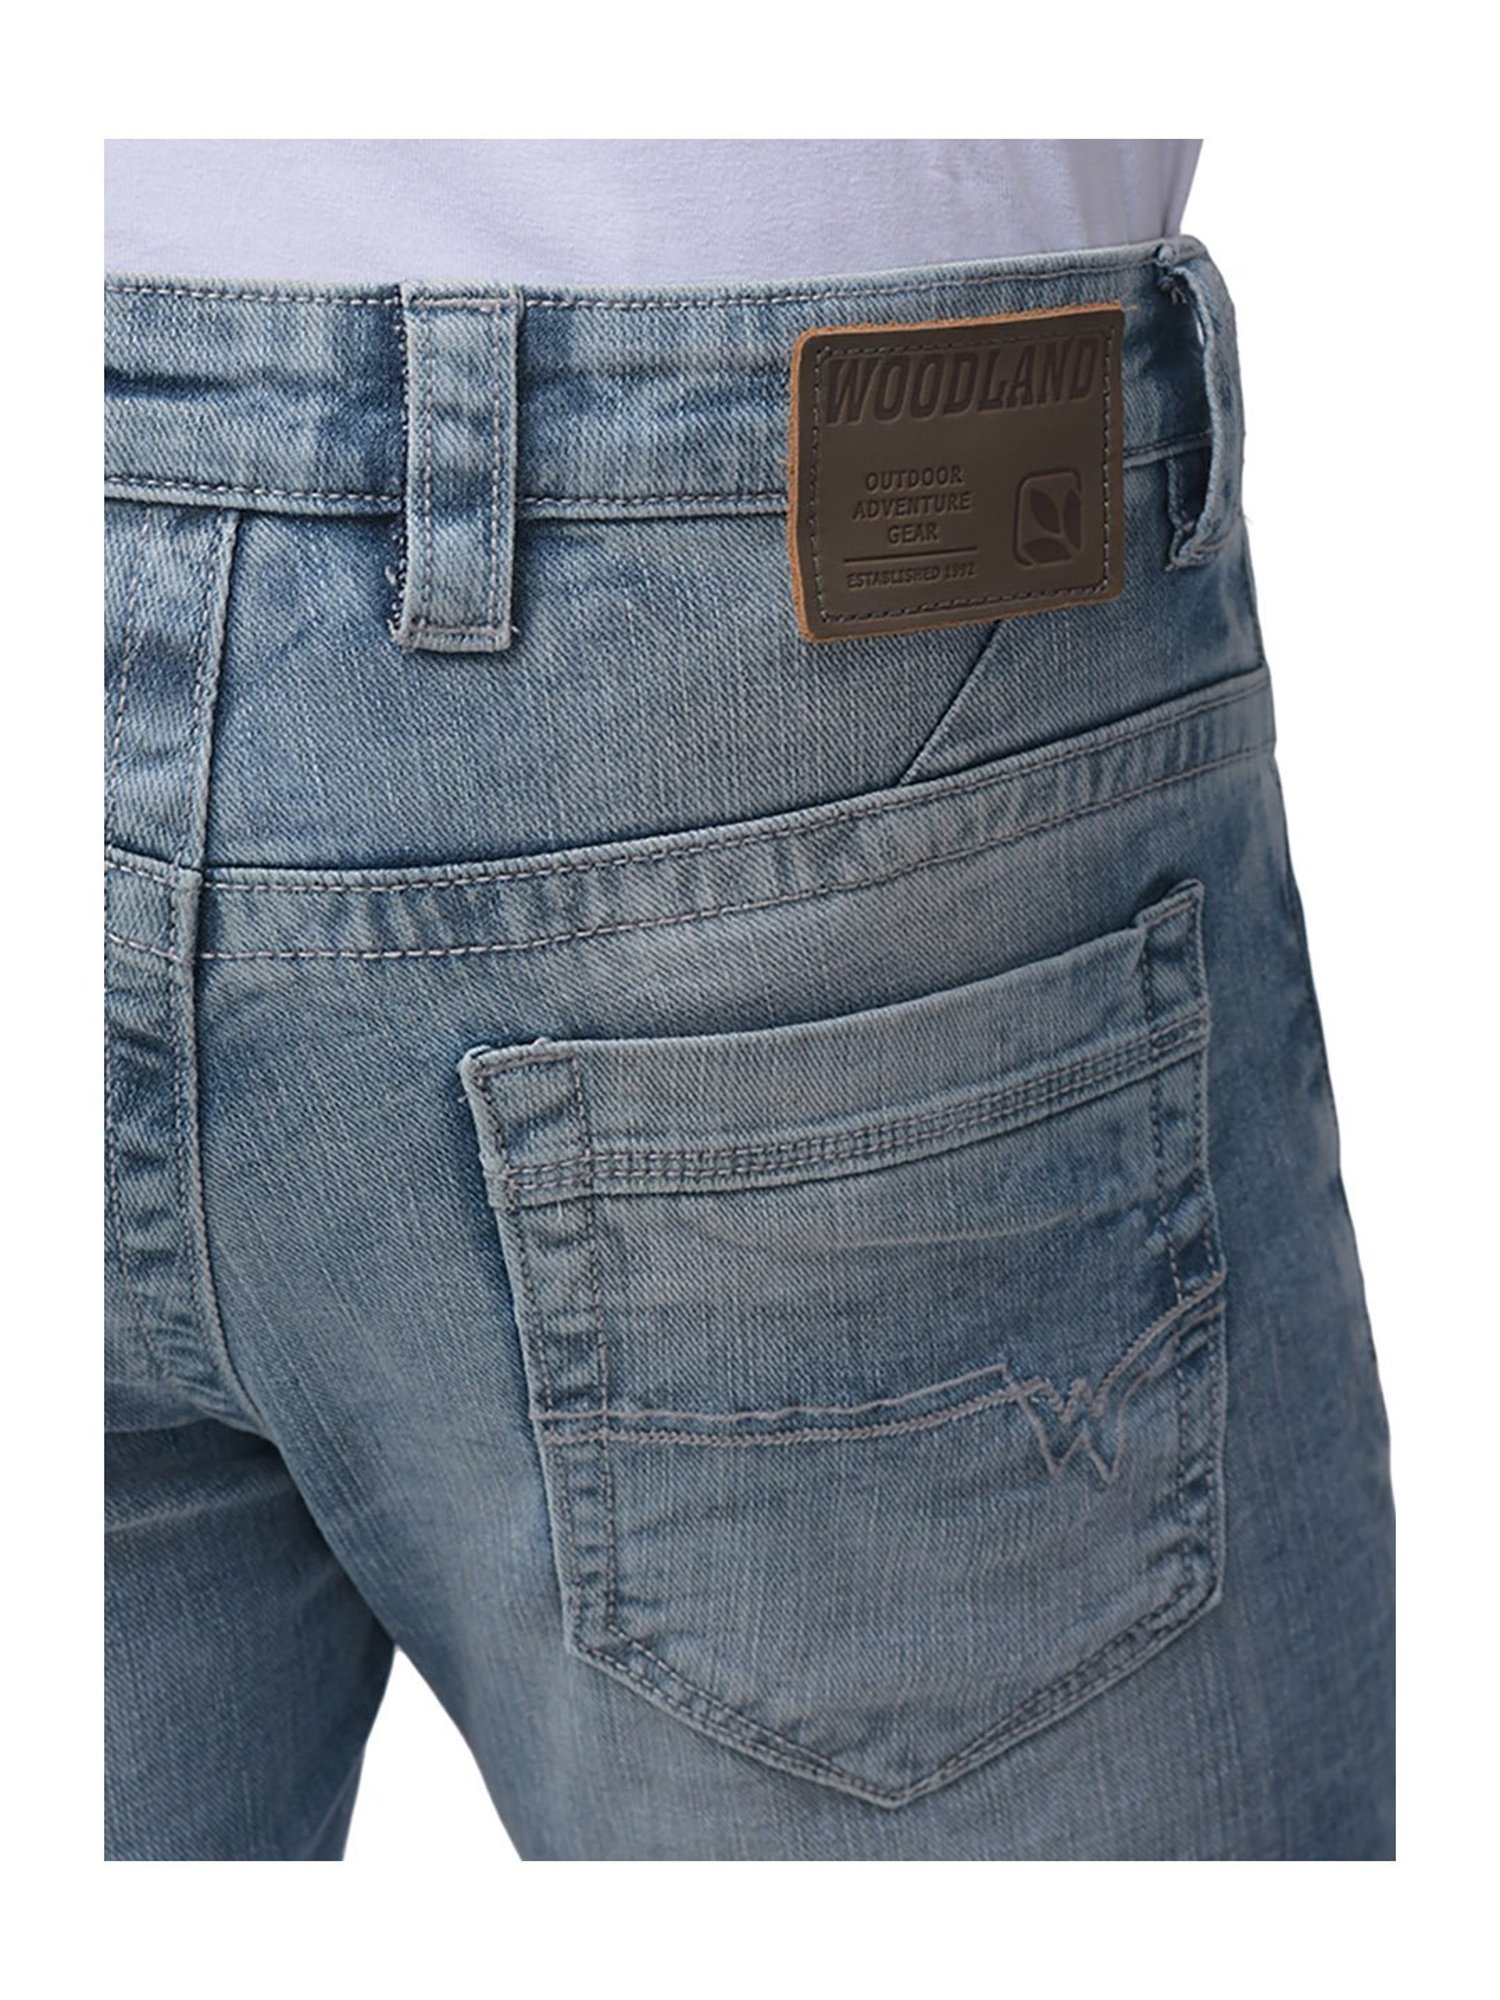 Buy Men Woodland Jeans Online In India